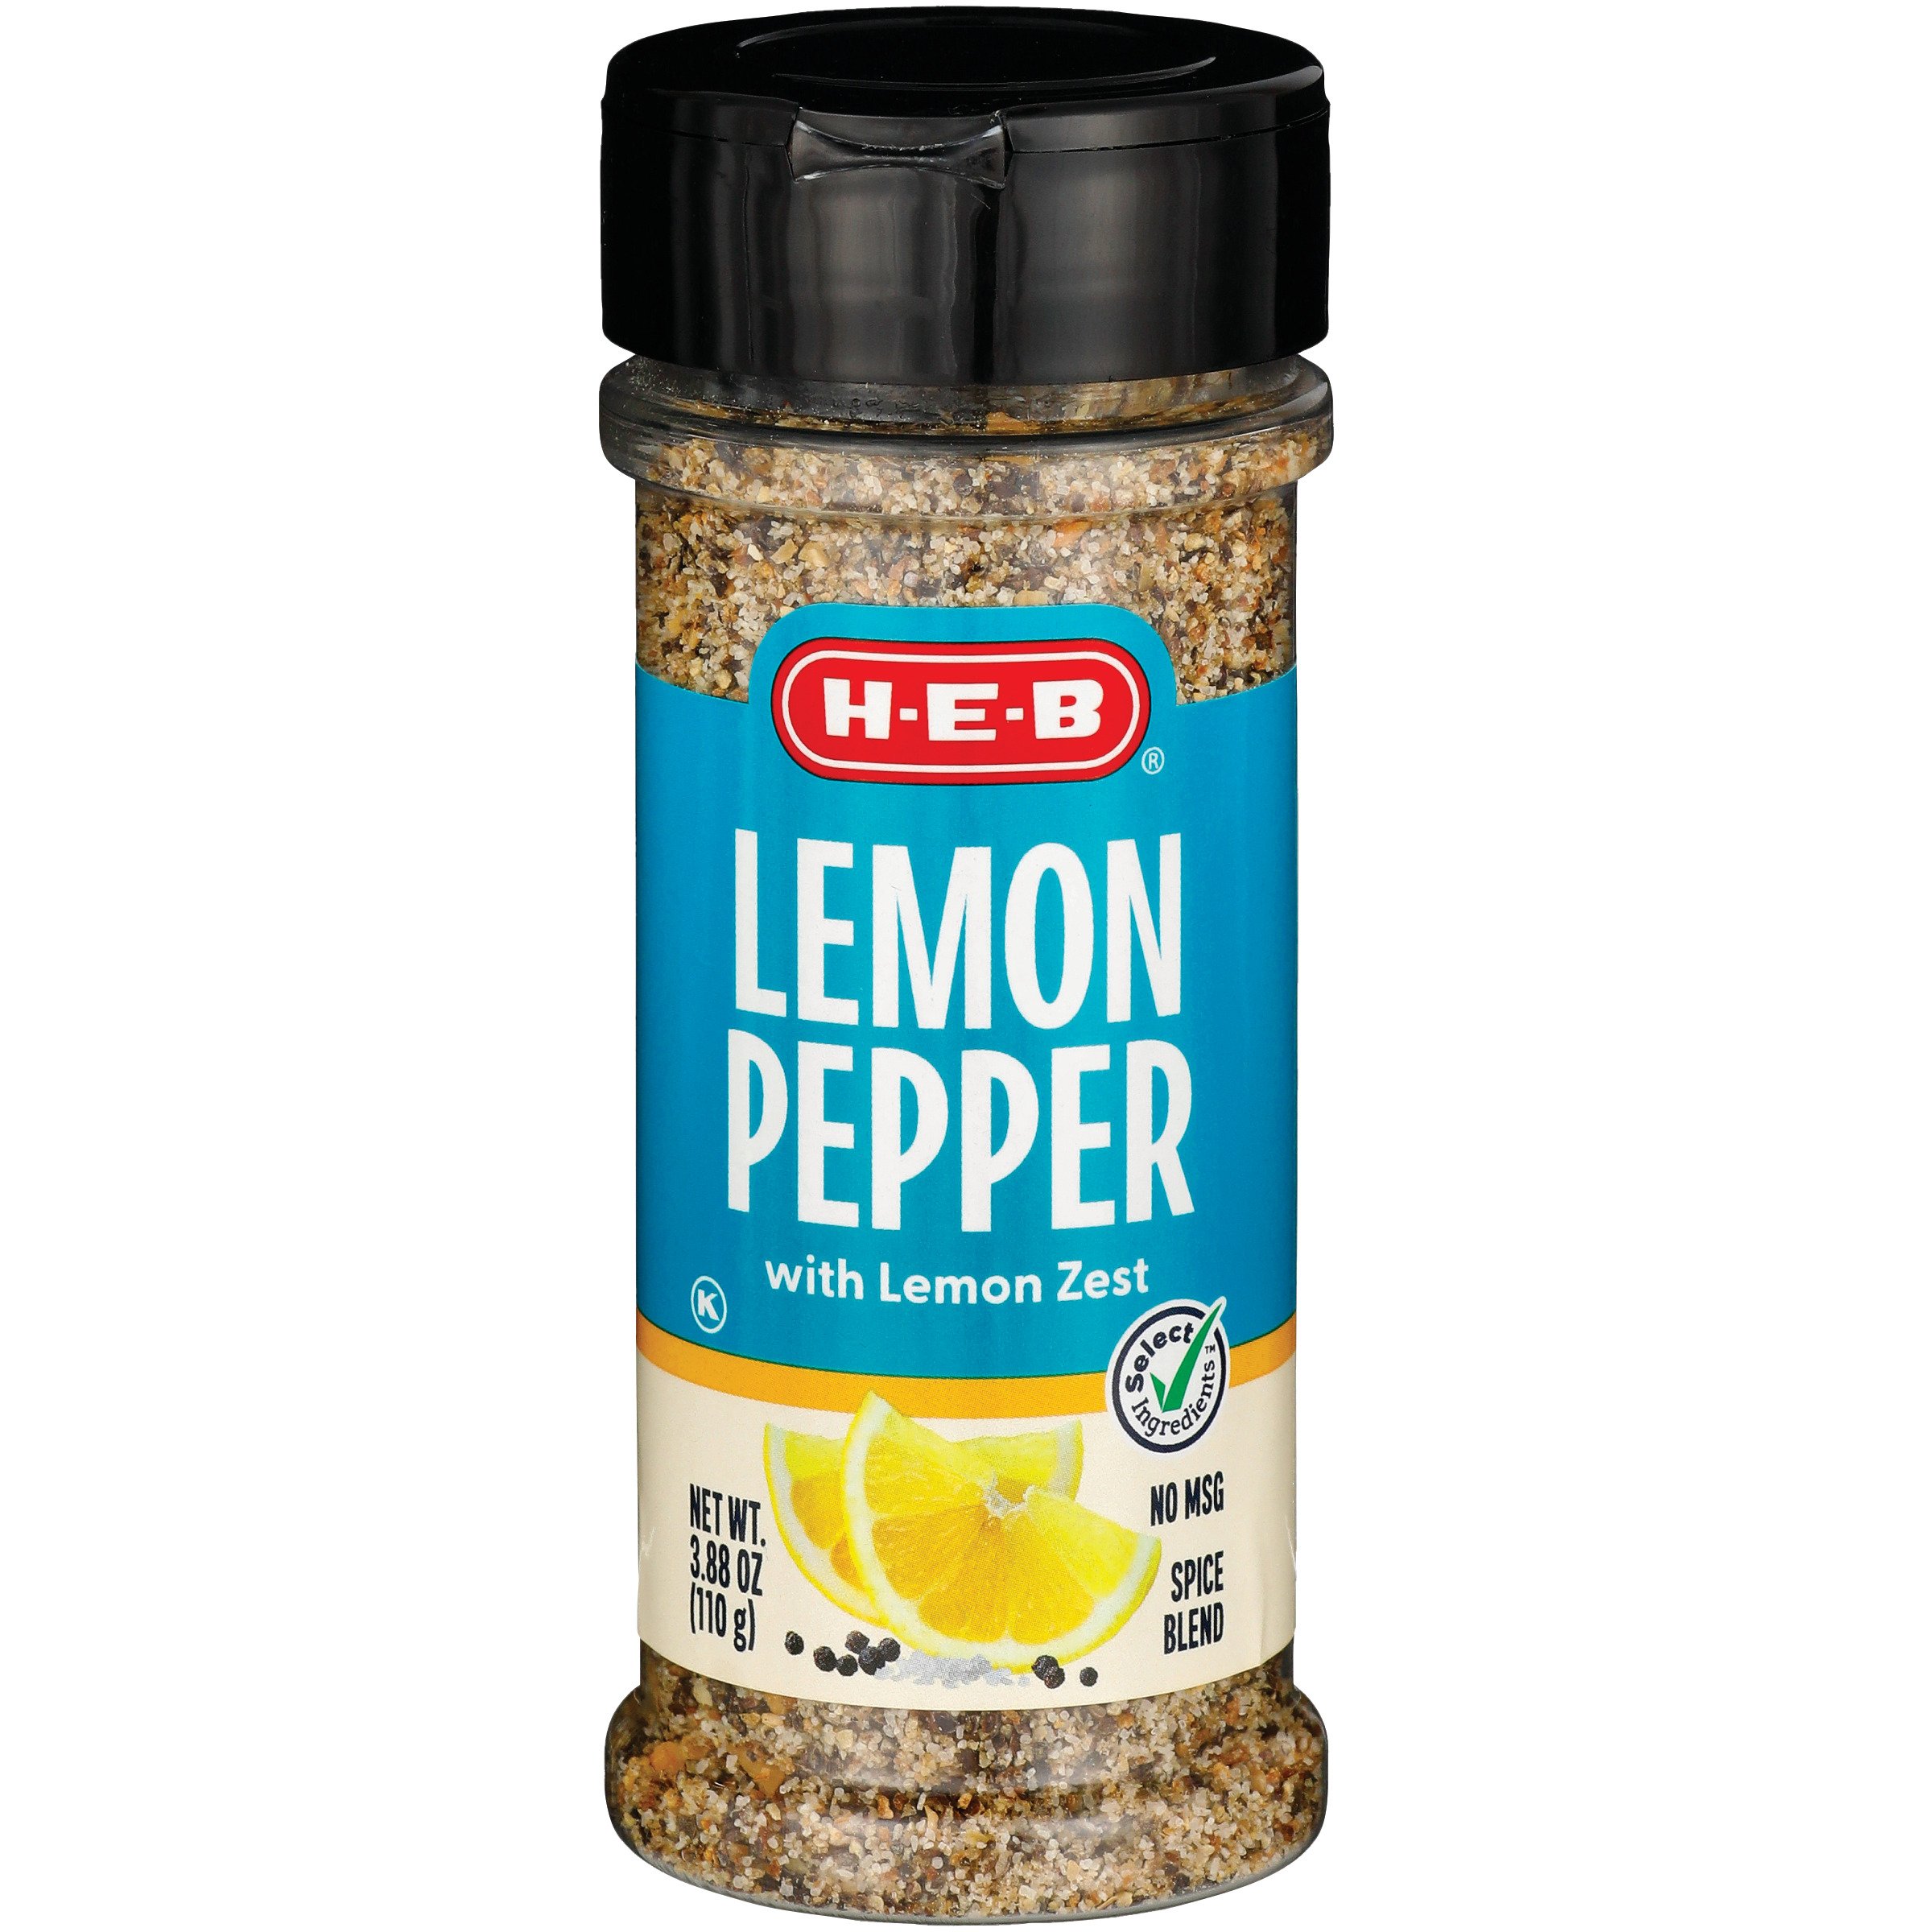 Brass Cuisine Lemon Pepper Seasoning